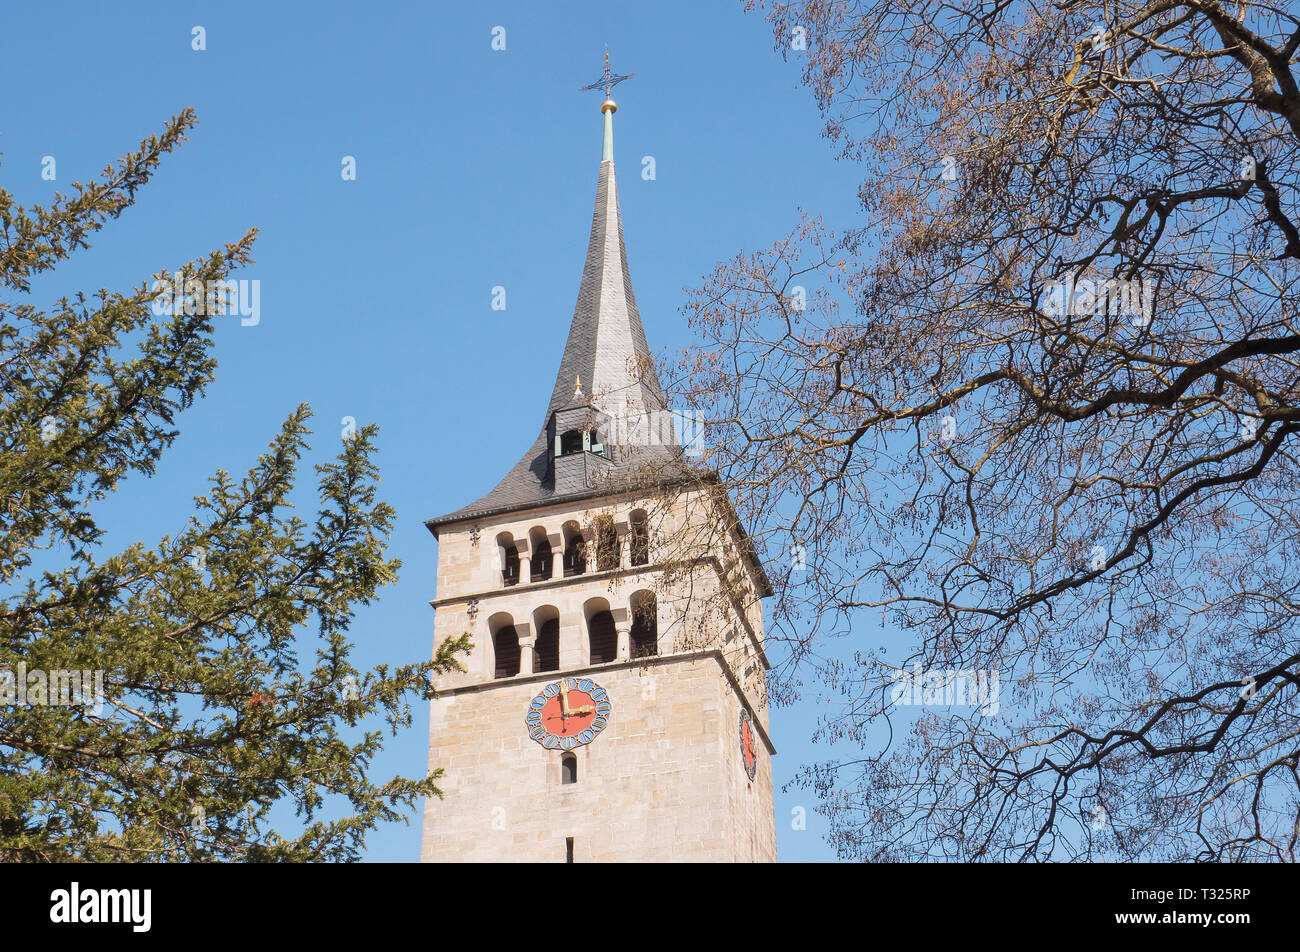 La chiesa di San Martino nei pressi del lago Klostersee, Sindelfingen, Germania. Bella e antica chiesa antient torre. Alberi a molla. N. persone vista panoramica Foto Stock